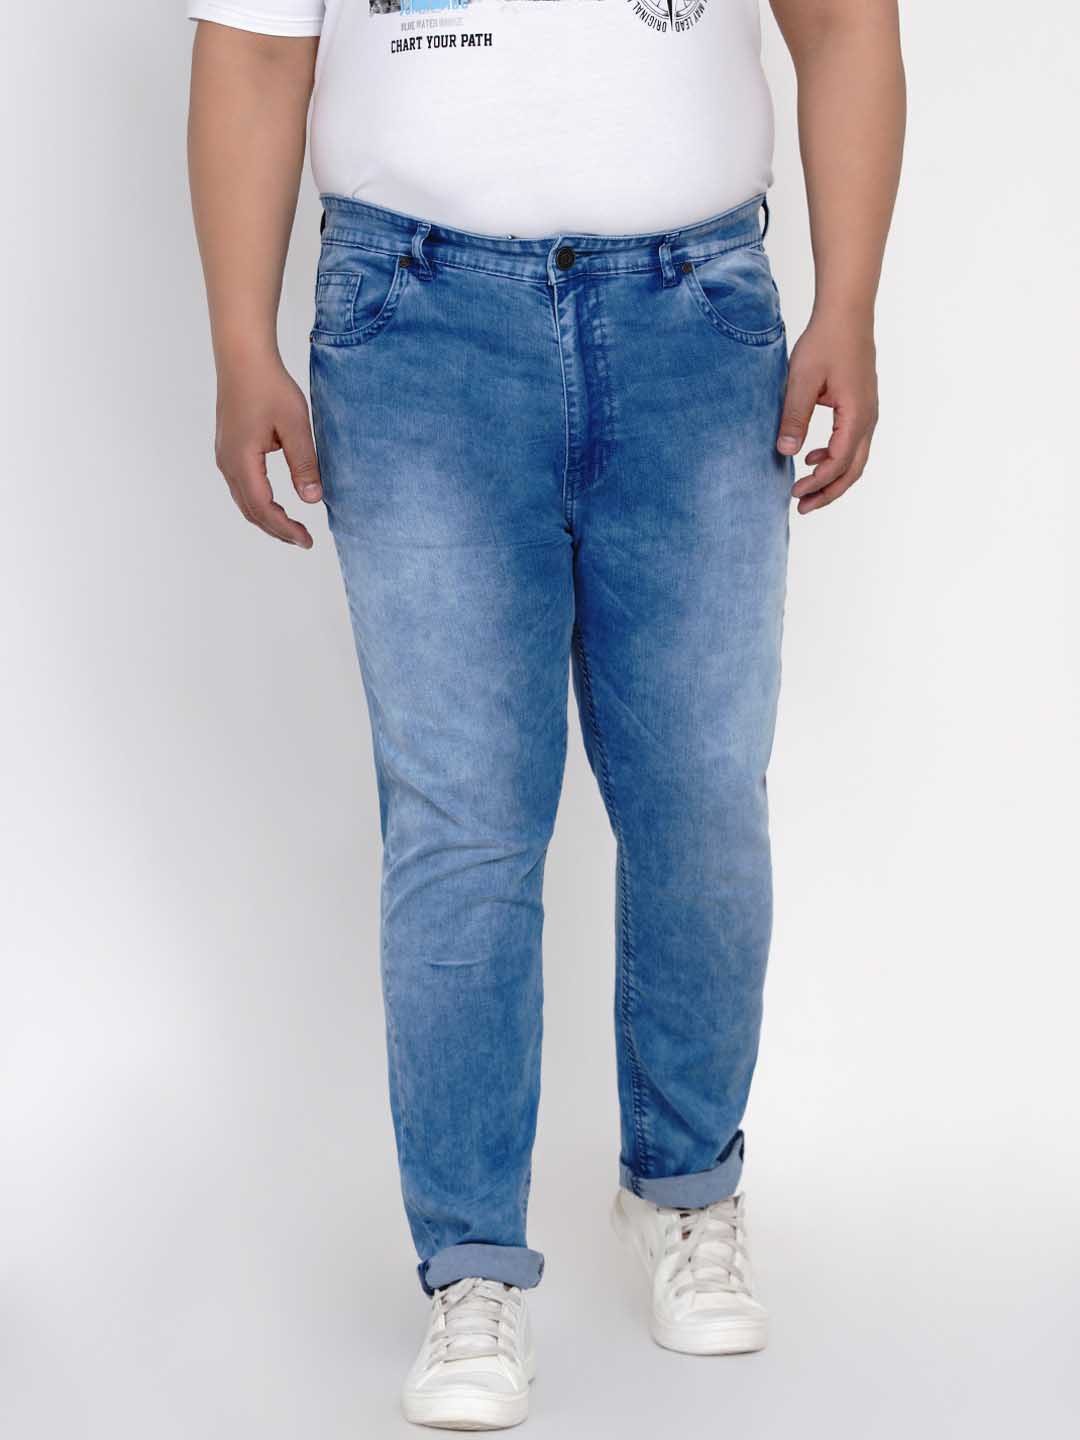 bottomwear/jeans/JPJ12116/jpj12116-1.jpg